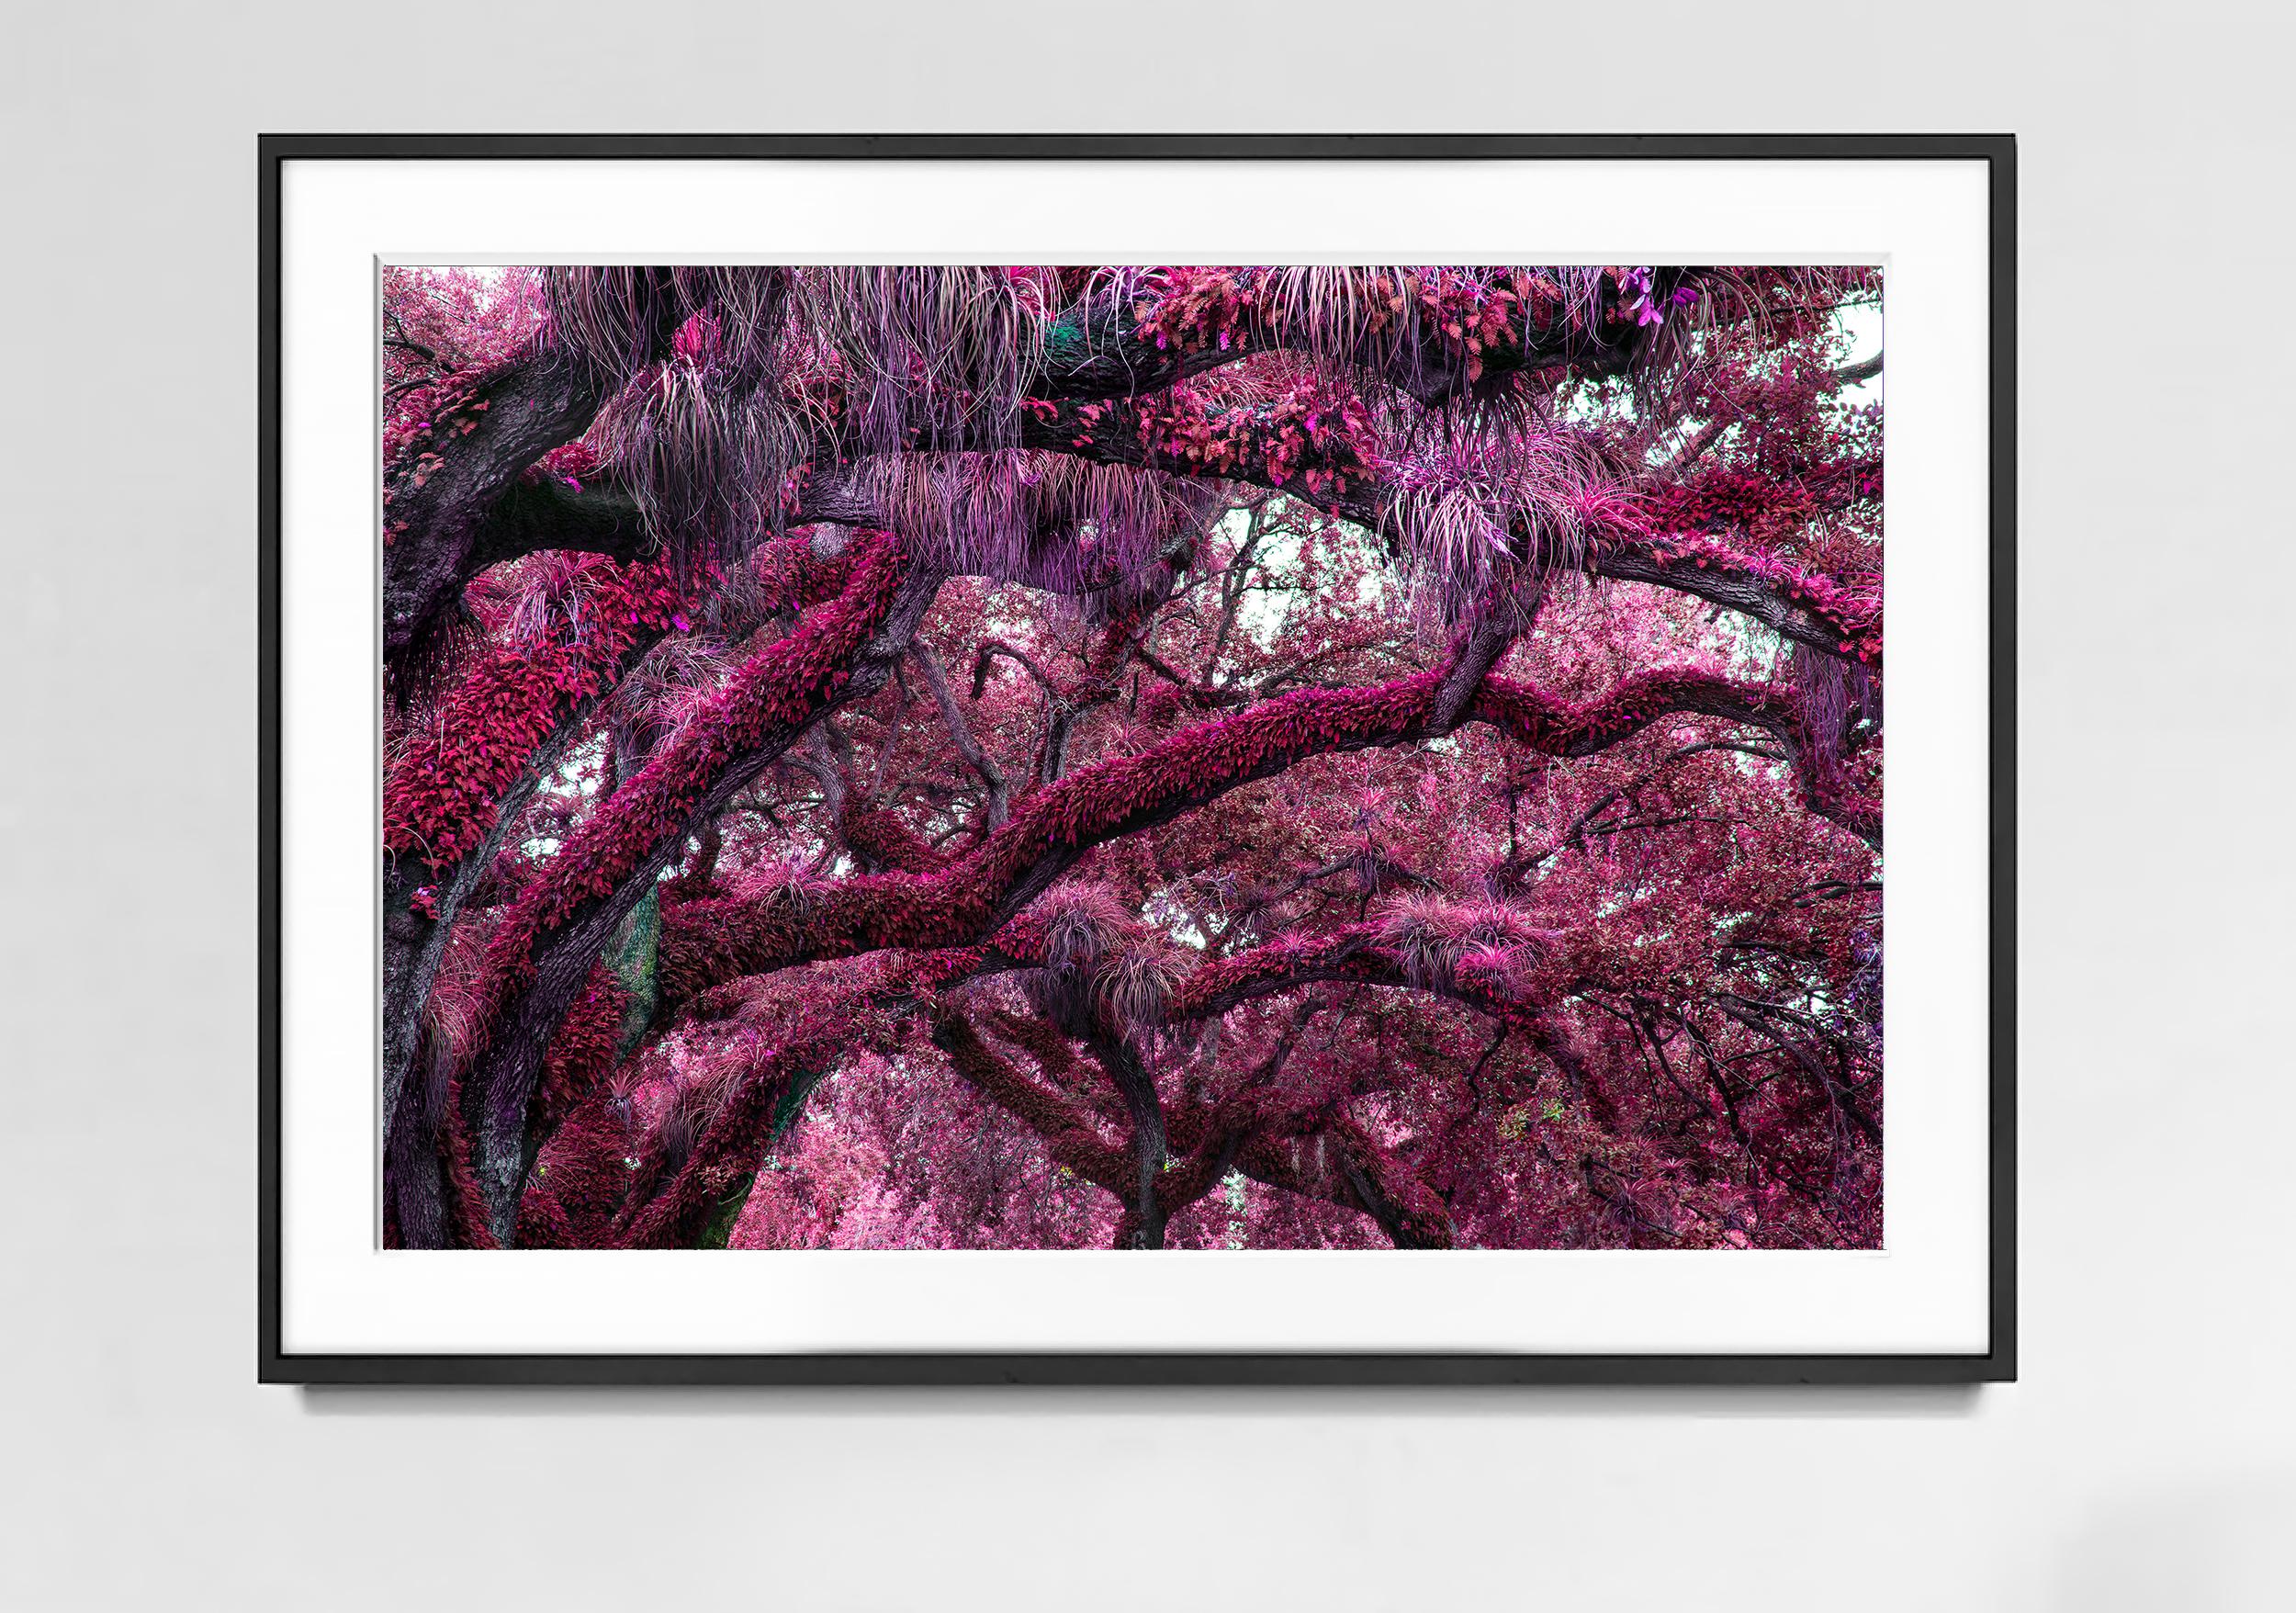 Yummie Trees.  Antike magentafarbene Erdoberfläche  – Photograph von Robert Funk